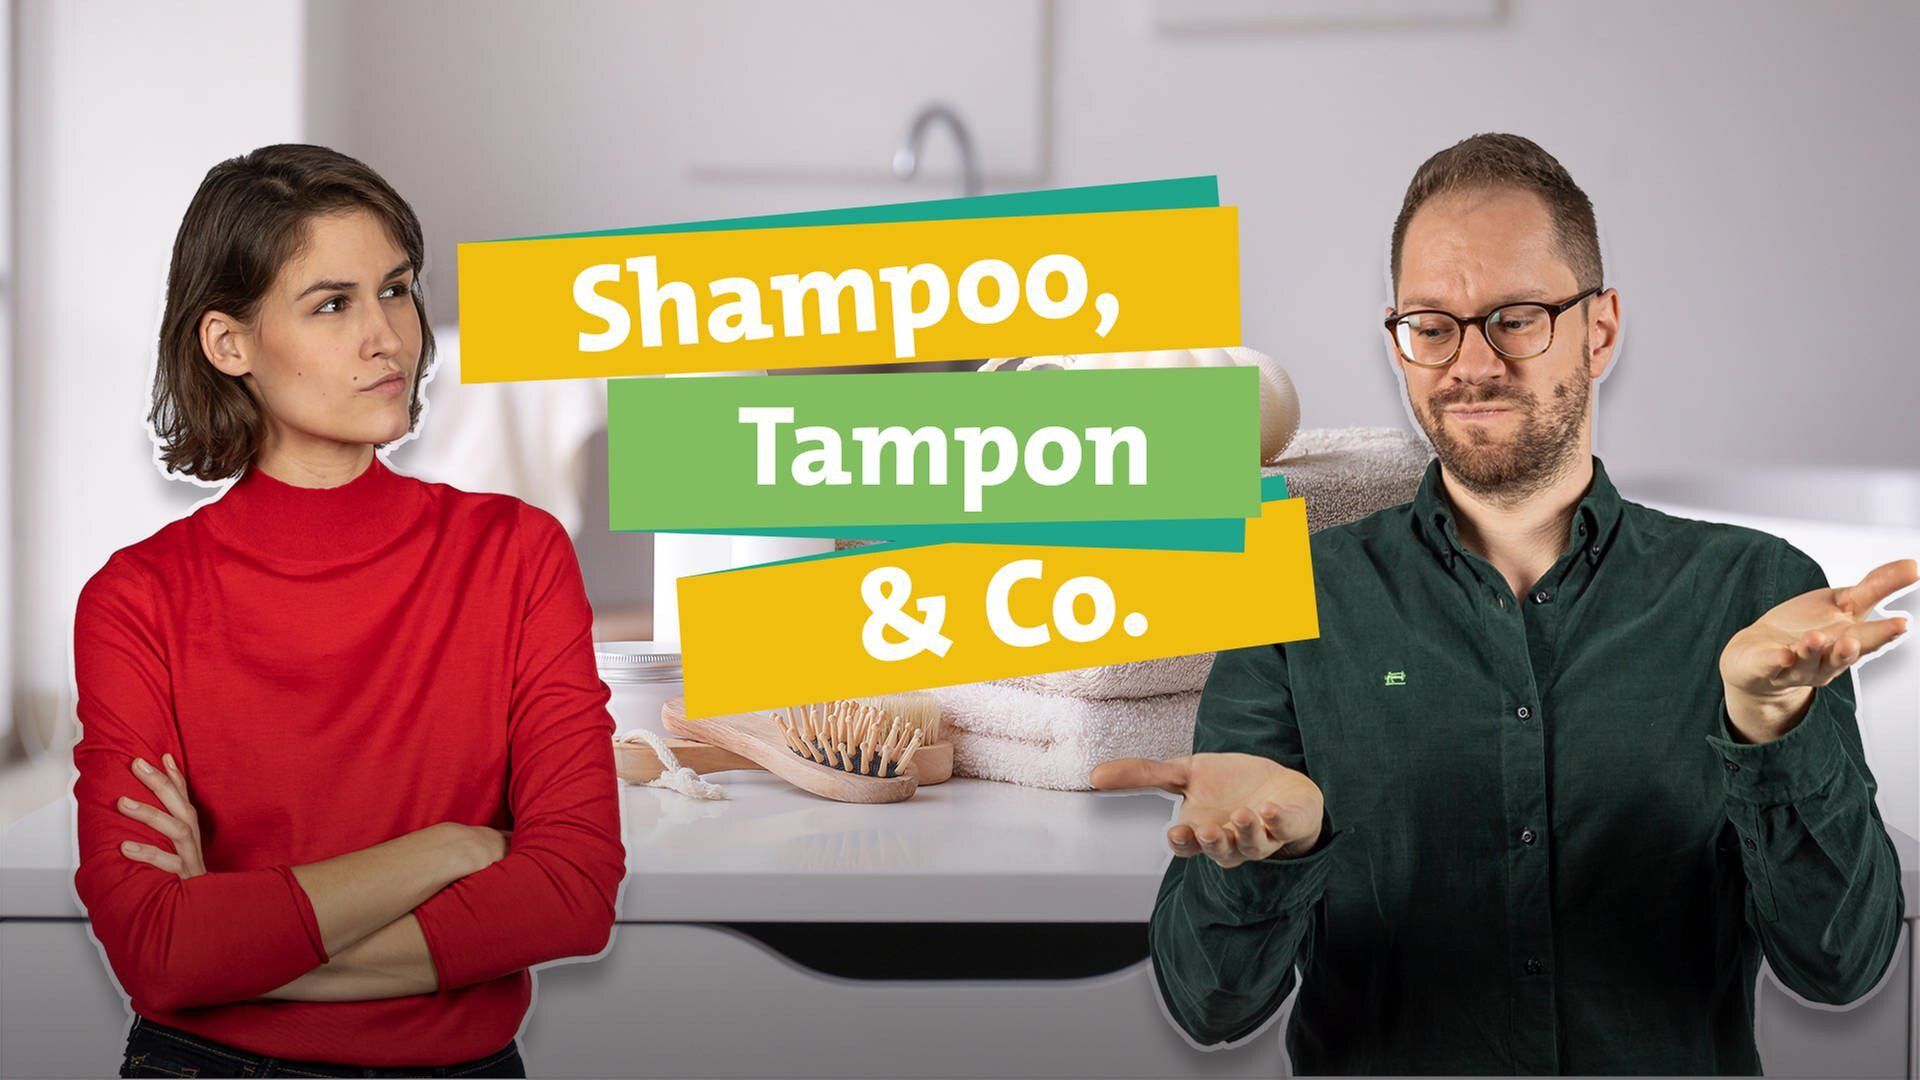 SWR Ökochecker: Shampoo, Tampon & Co.